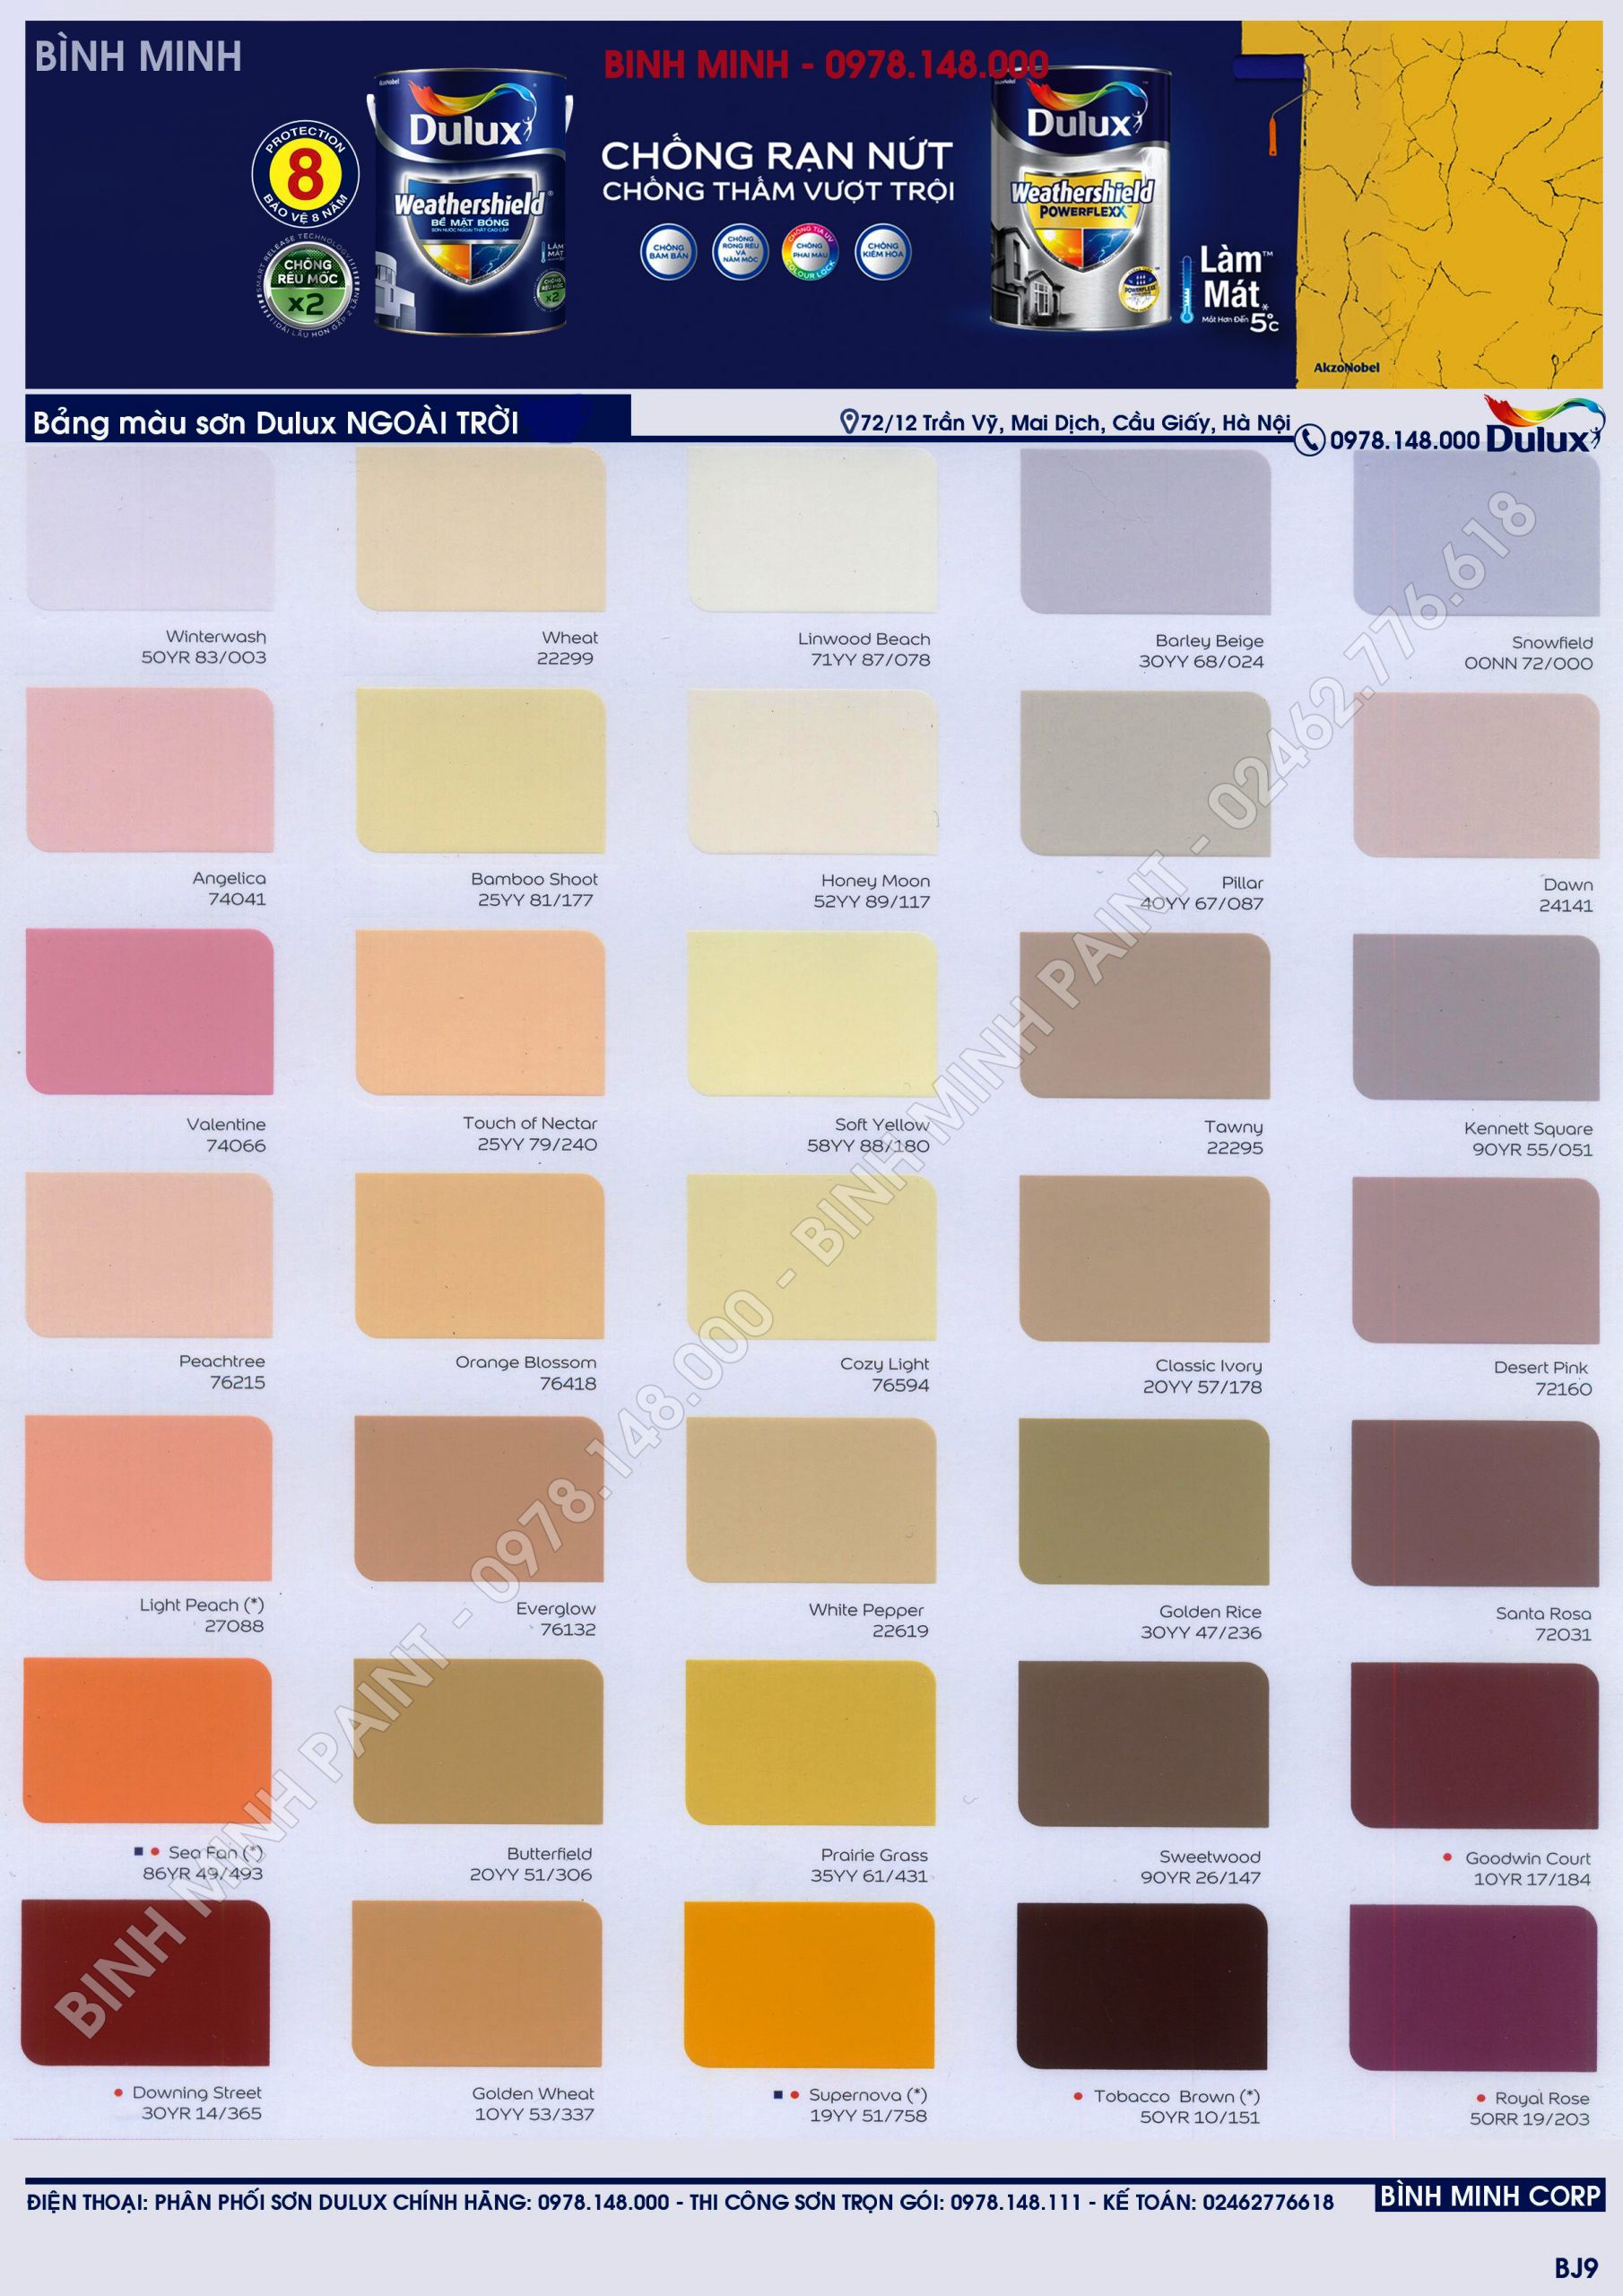 Bảng màu sơn hiệu ứng Dulux: Là người đam mê décor, bạn không muốn nhà mình trở nên nhàm chán? Hãy khám phá bảng màu sơn hiệu ứng Dulux với những màu sắc độc đáo và làm cho tường nhà của bạn trở thành điểm nhấn ấn tượng.